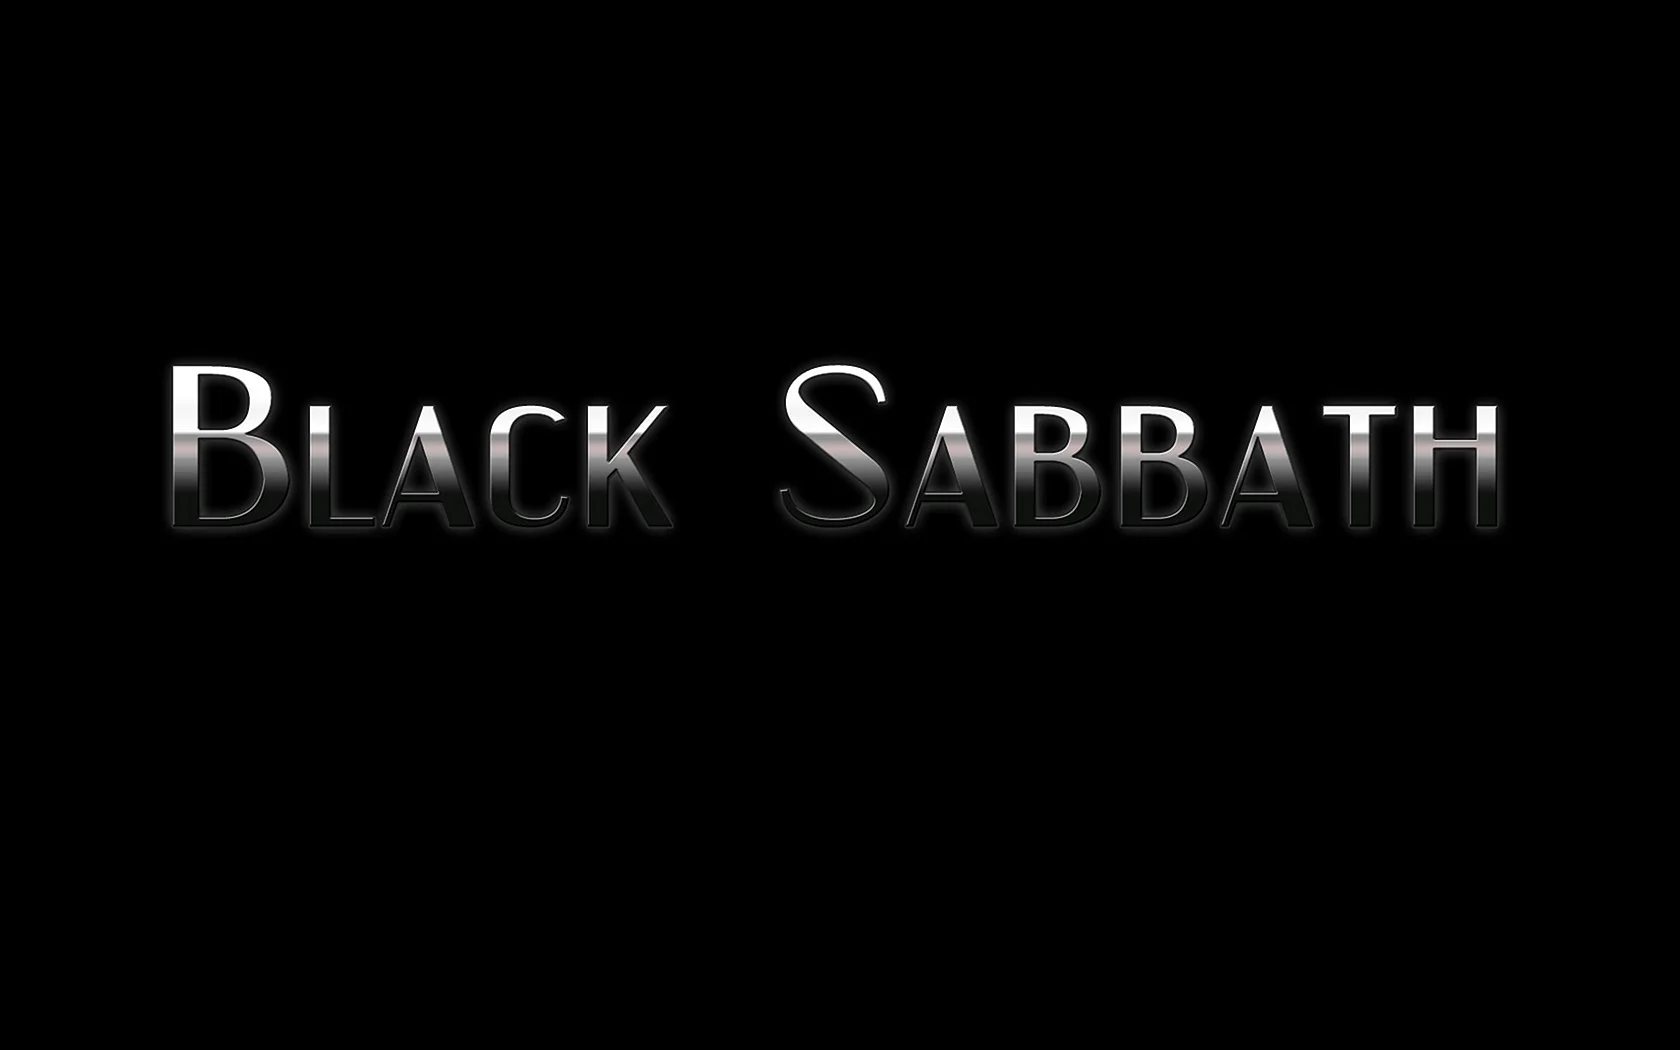 Black Sabbath Font Wallpaper